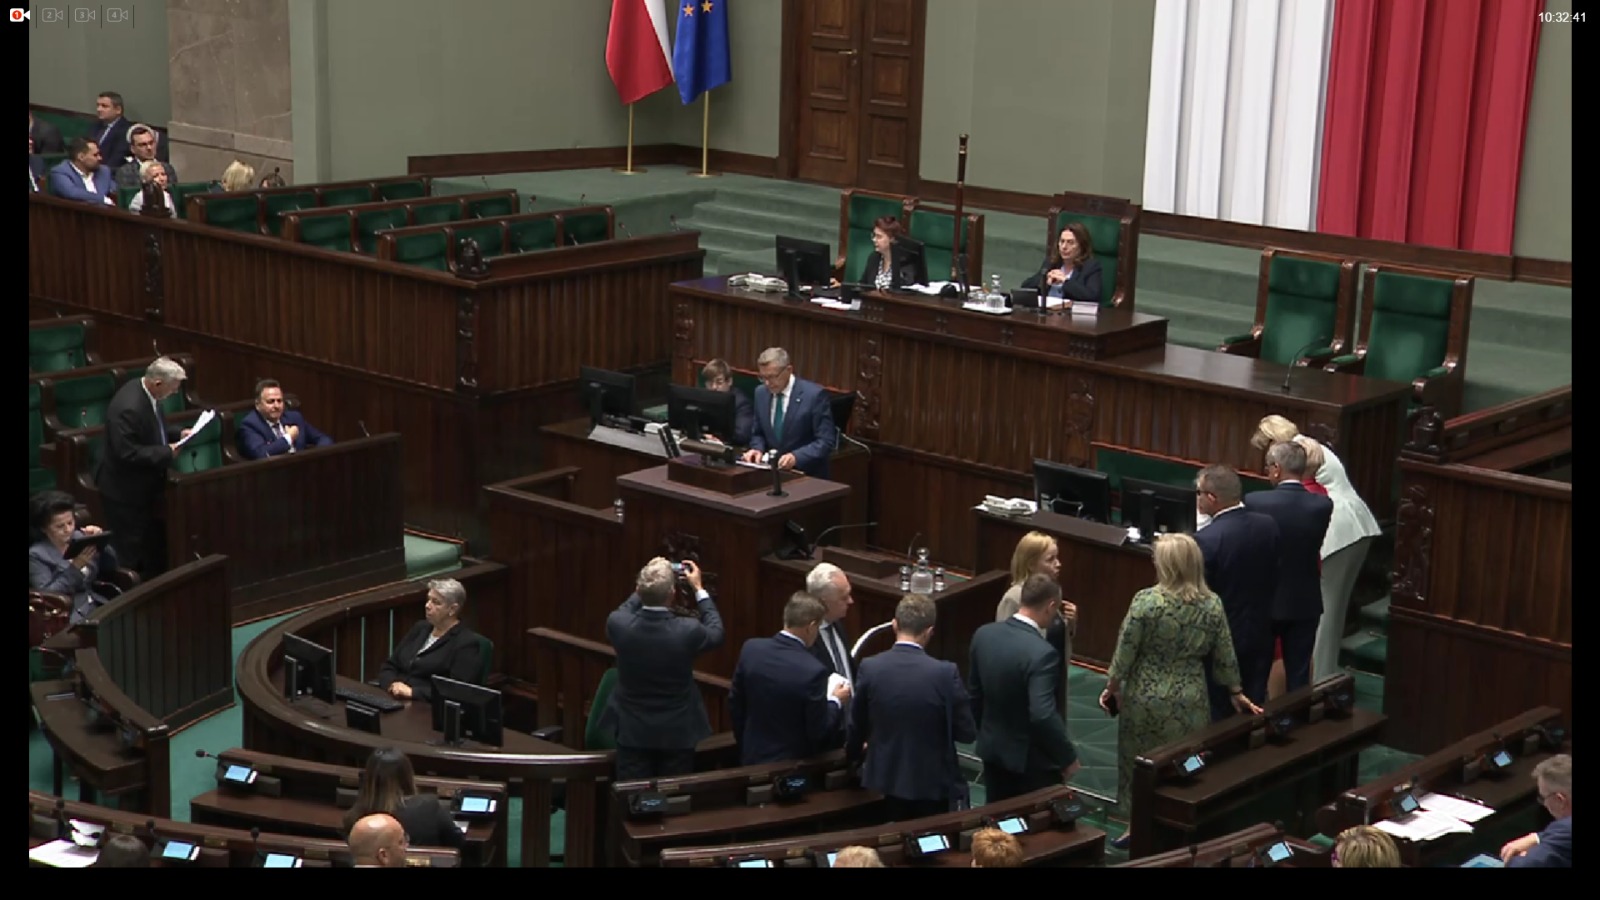 Debata w Sejmie. Fot. Michał Perzyński